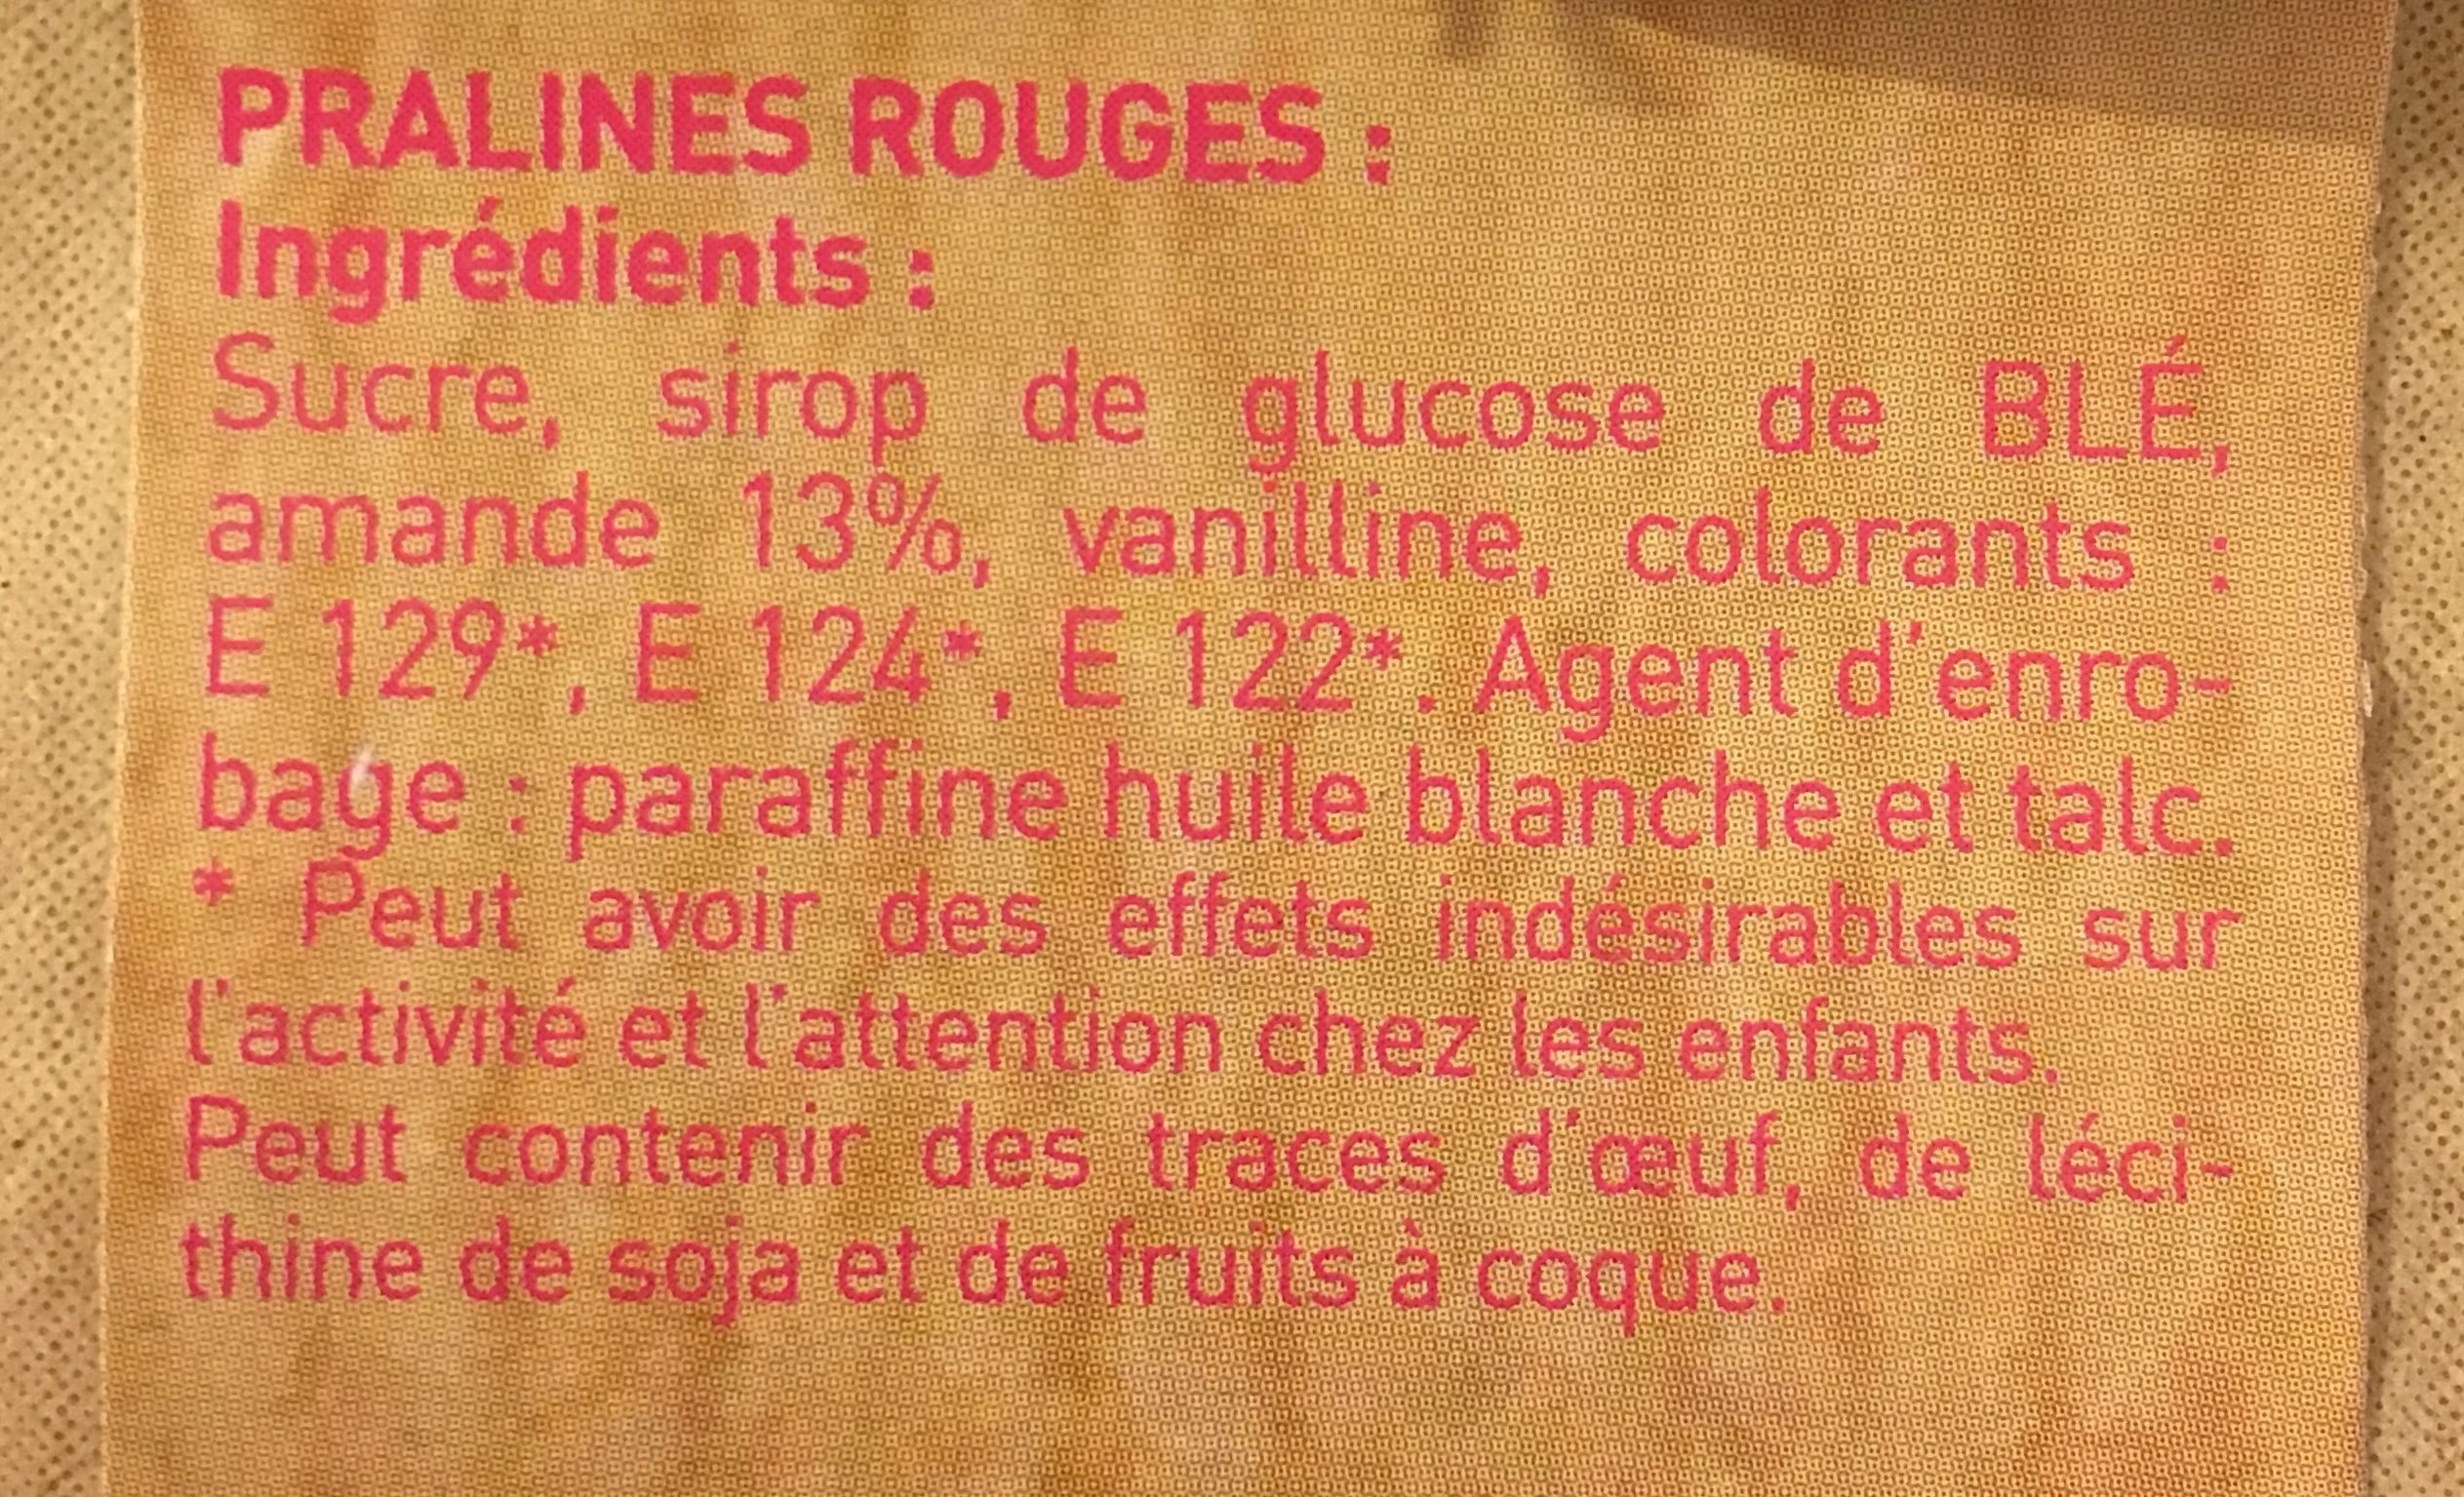 Praline rouge - Ingredients - fr